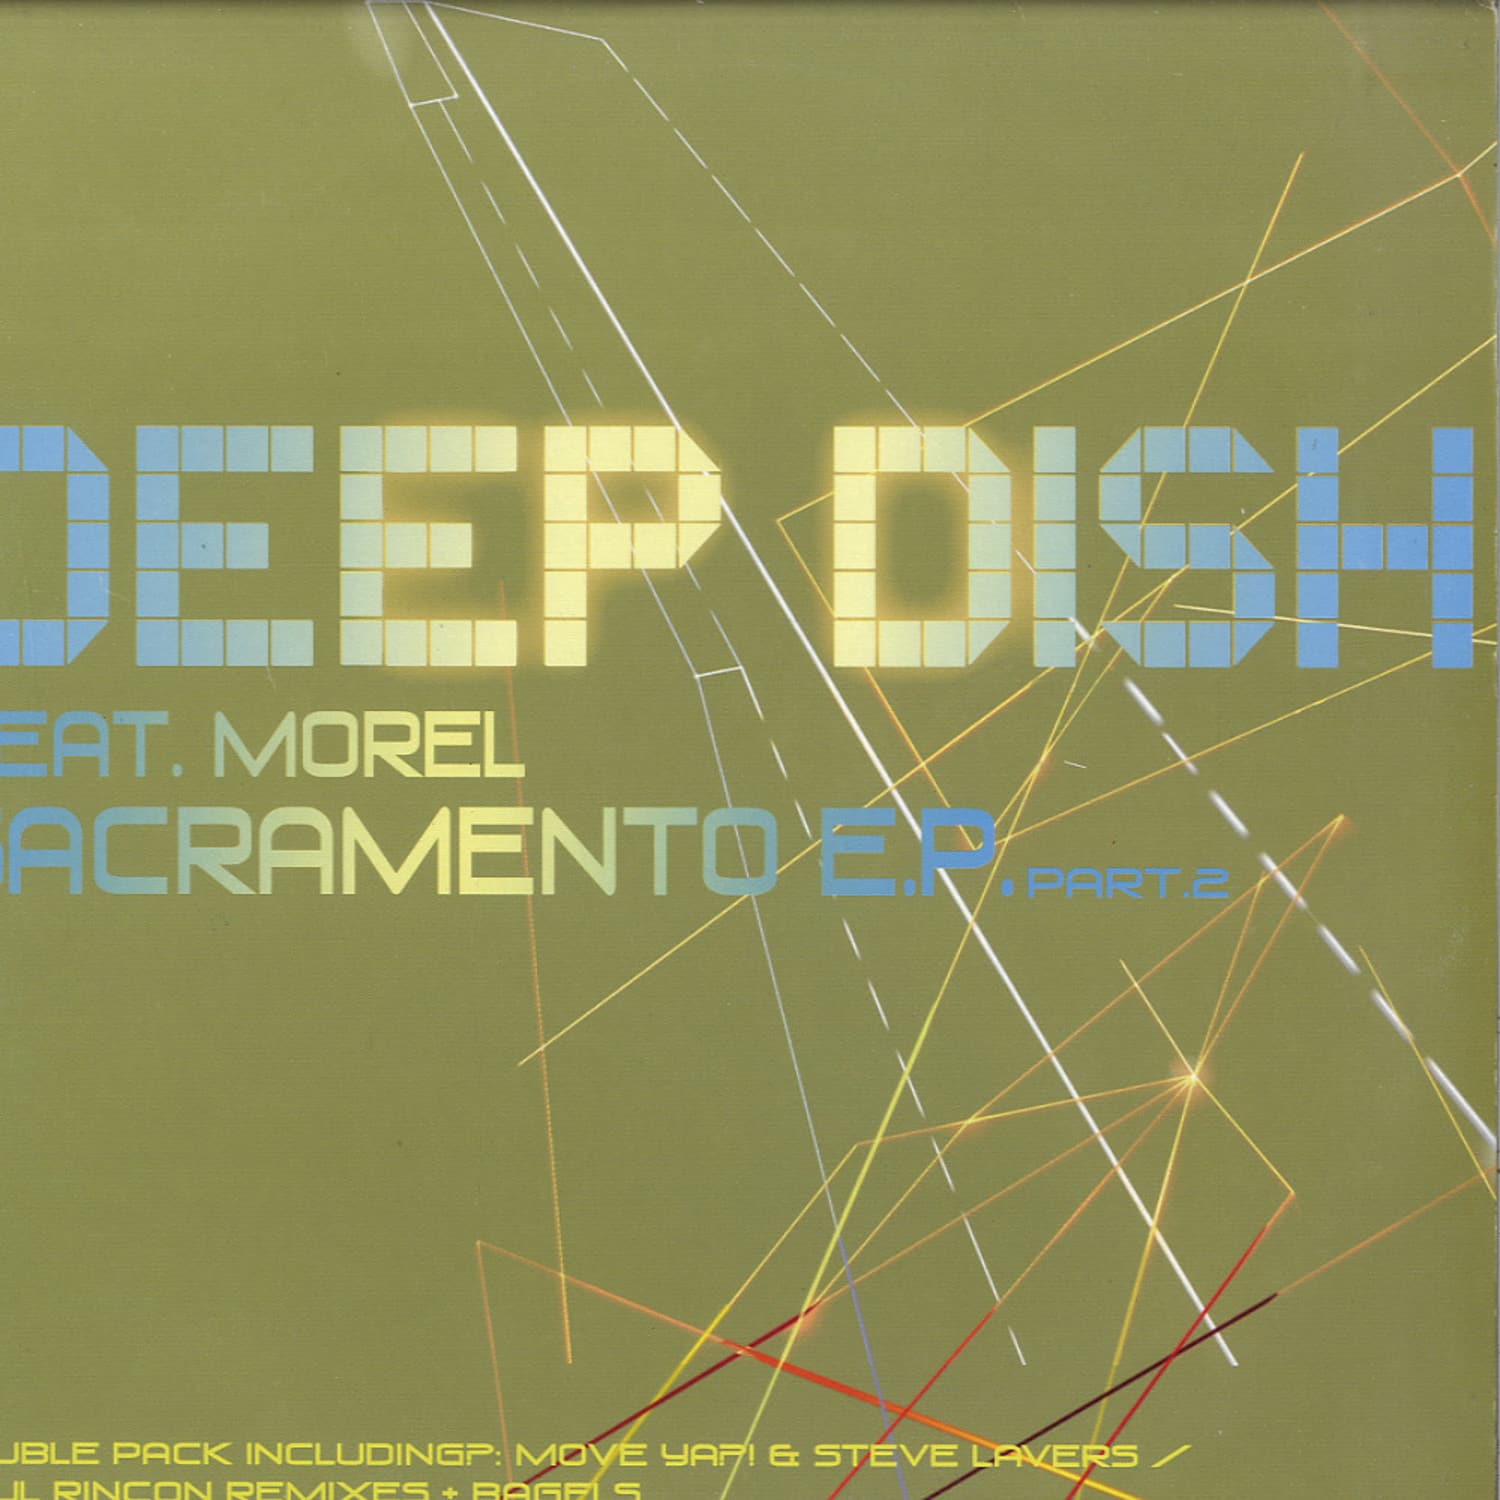 Deep Dish feat Morel - SACRAMENTO EP PART 2 